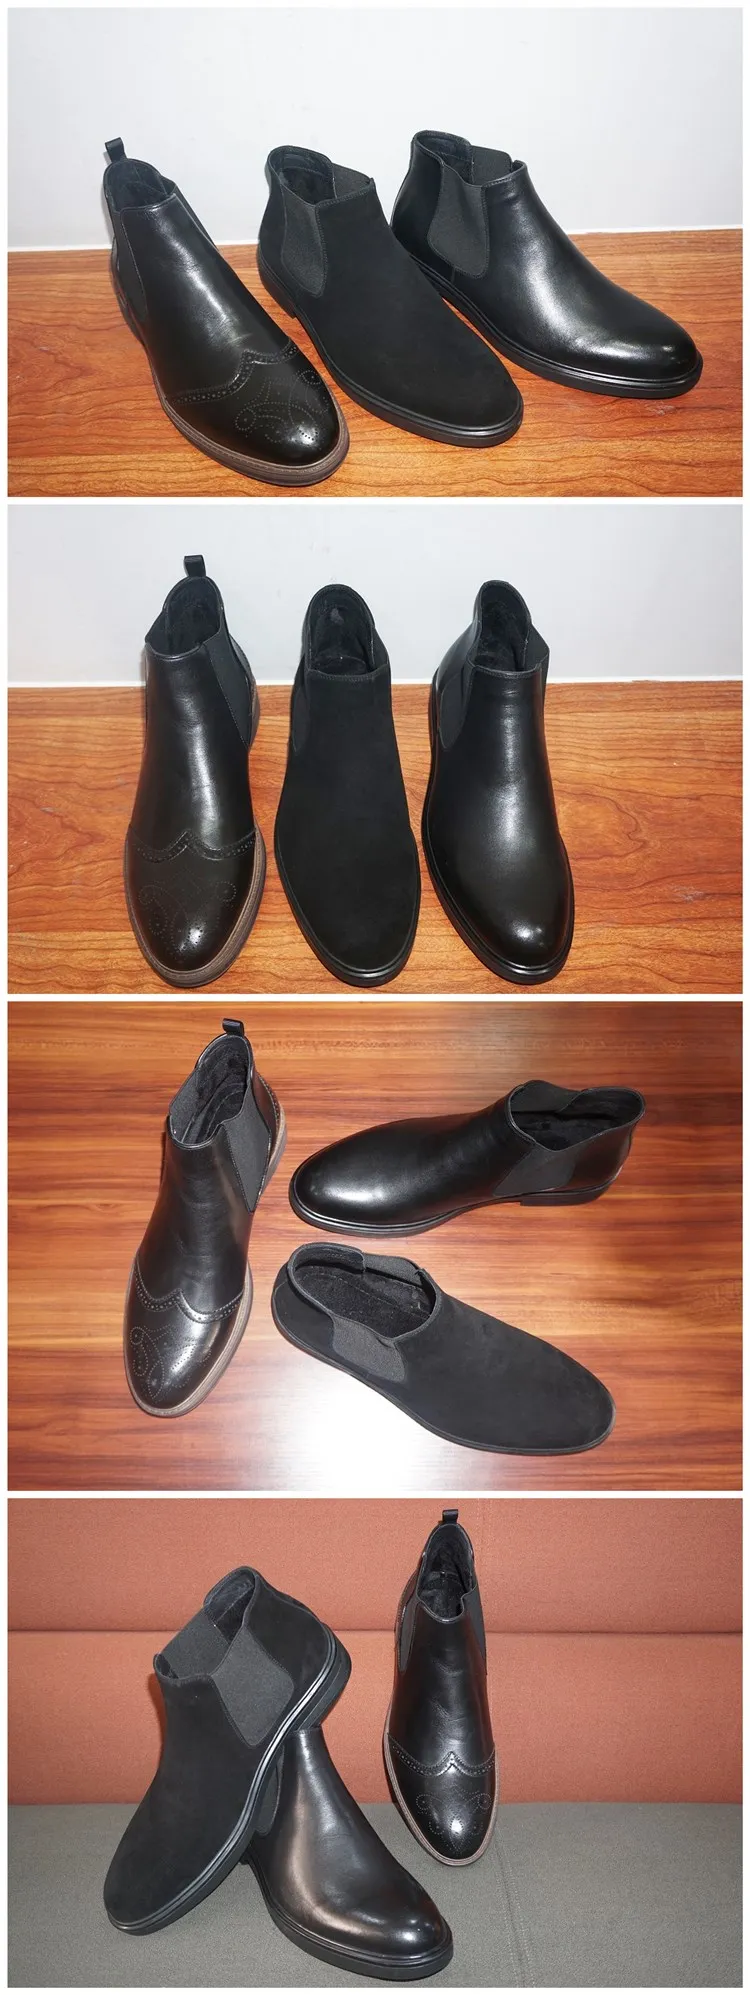 Bottes Chelsea en cuir italien noir Chaussures Chaussures homme Bottes Chaussures d’ascenseur augmentant la hauteur de 3 pouces 